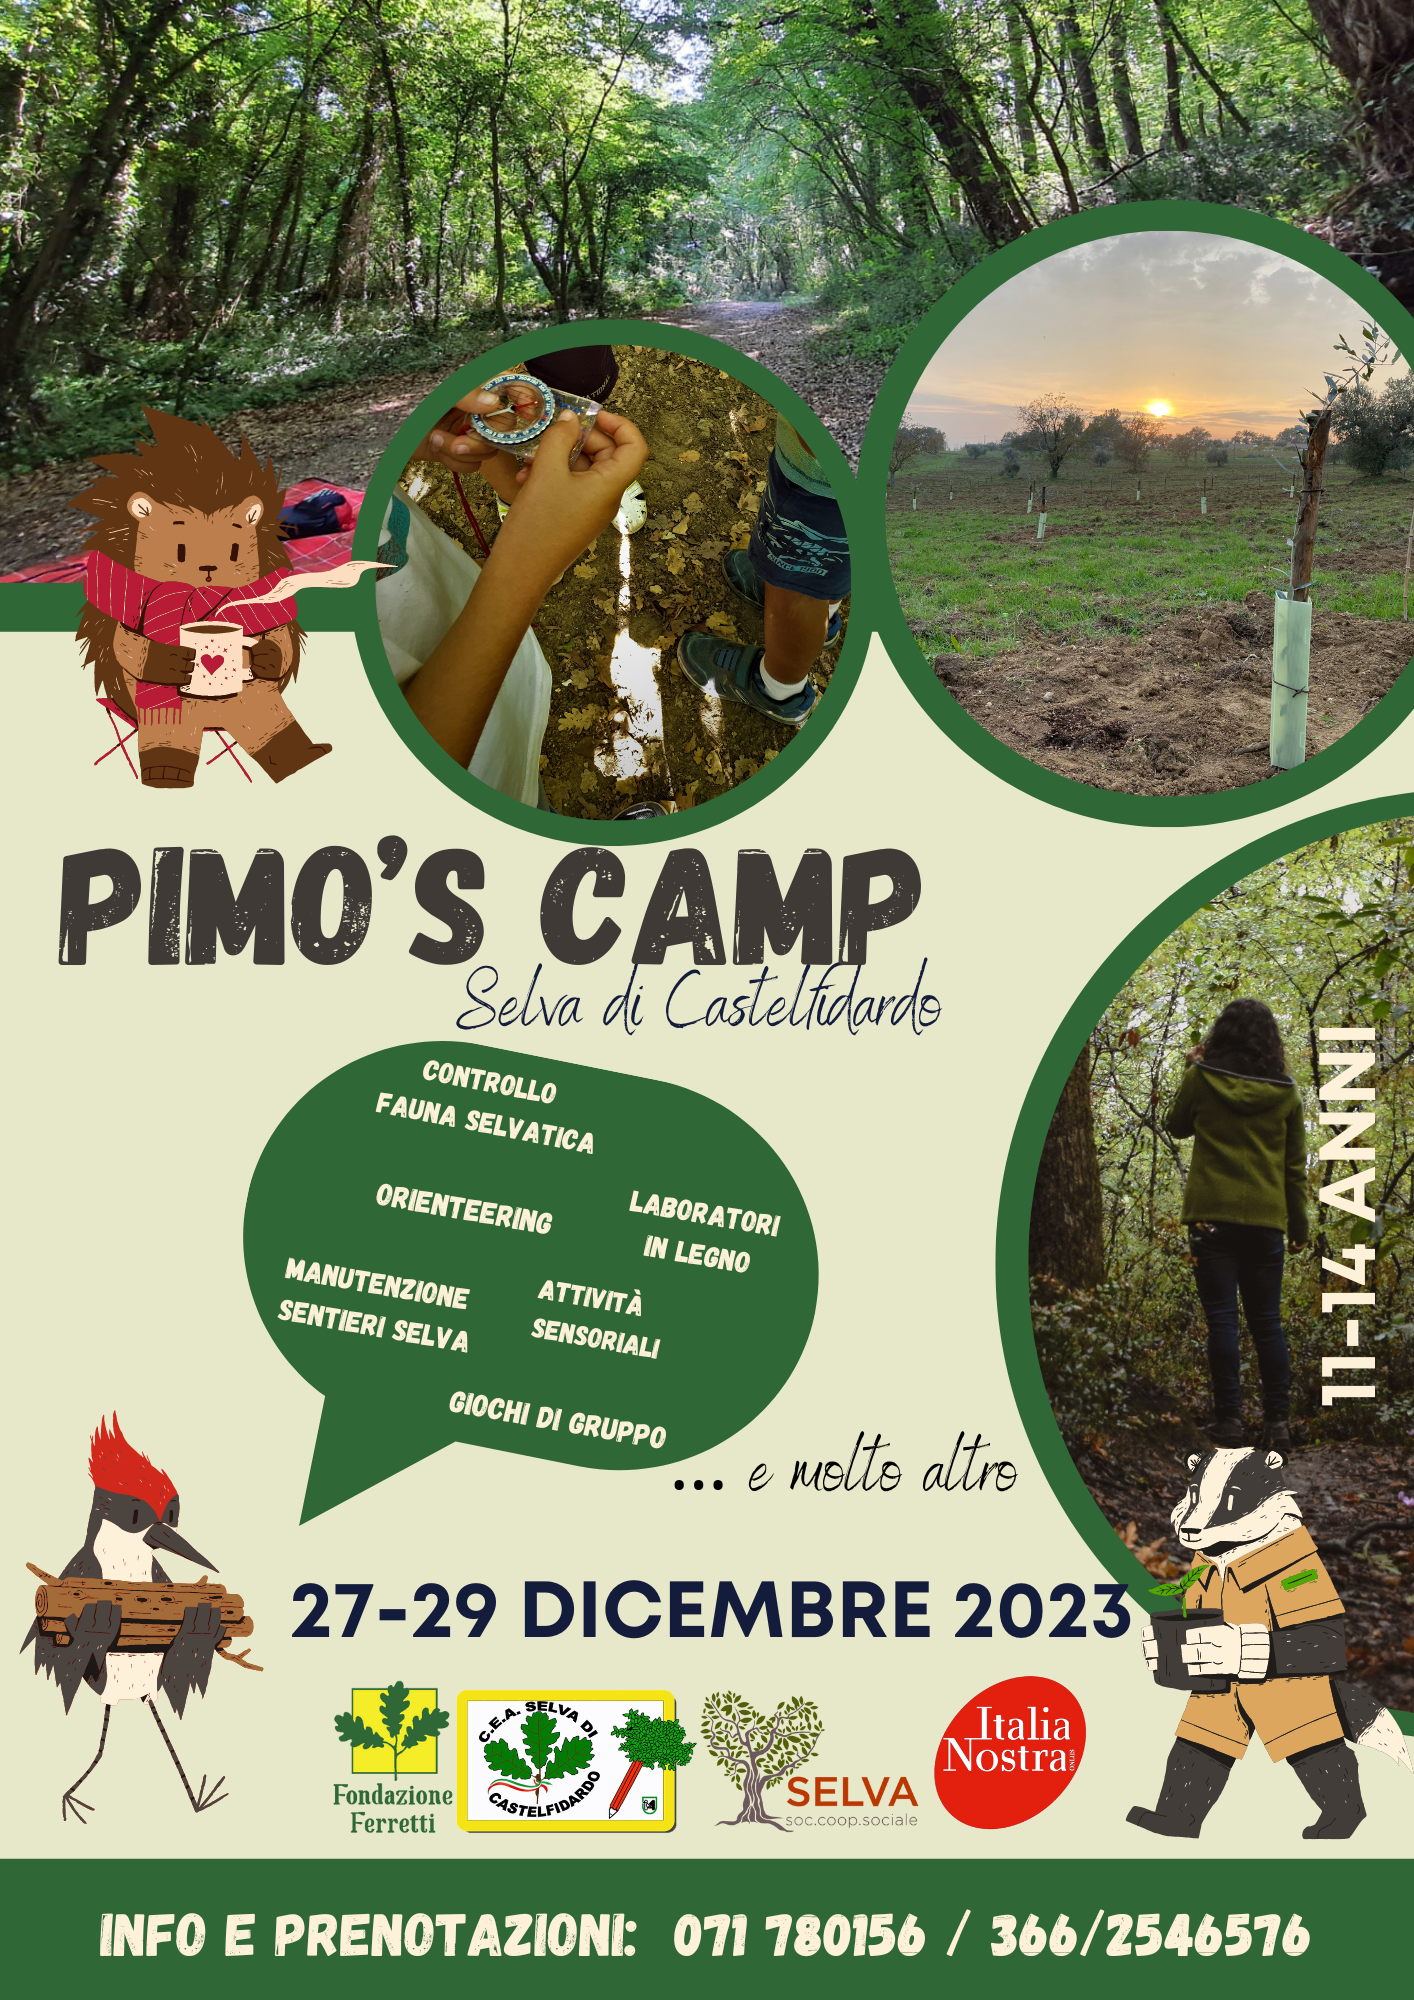 PIMO'S CAMP PER RAGAZZI 11-14 ANNI